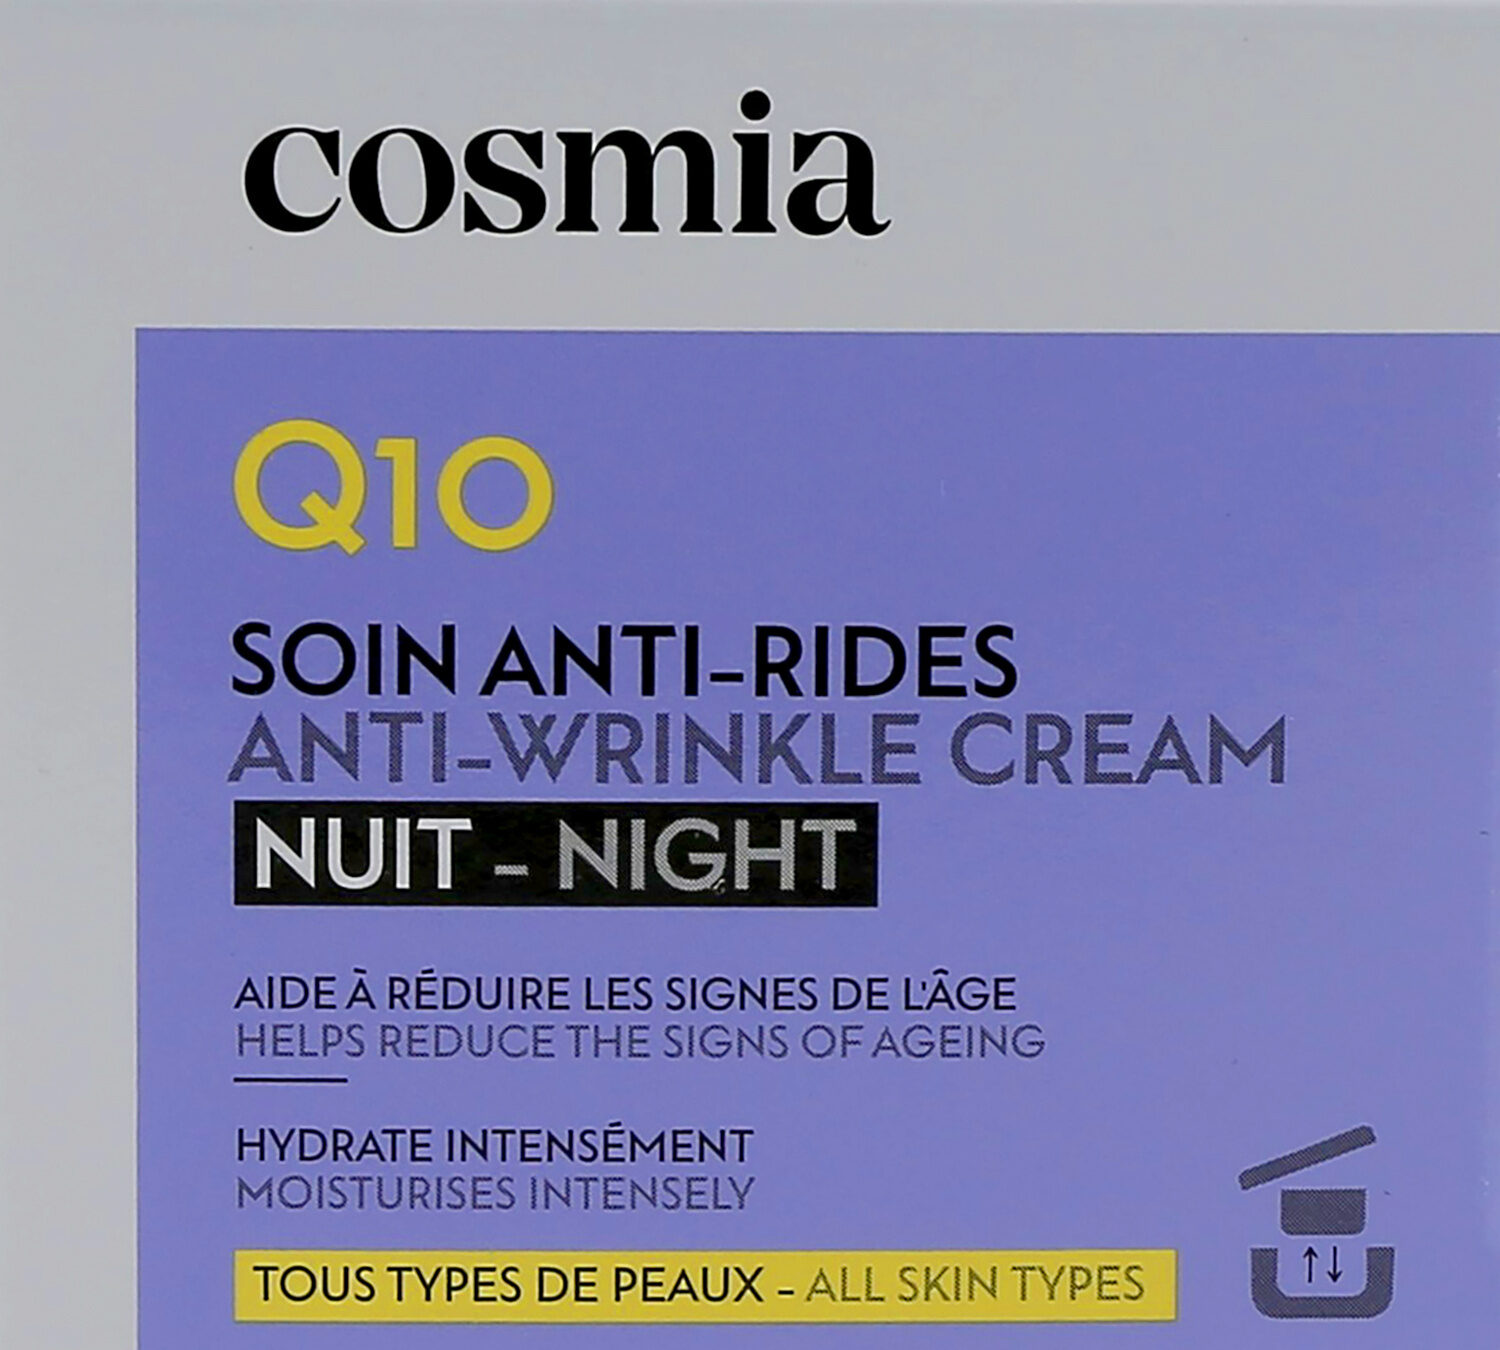 Cosmia creme nuit - anti ride - q10 50ml - Продукт - fr